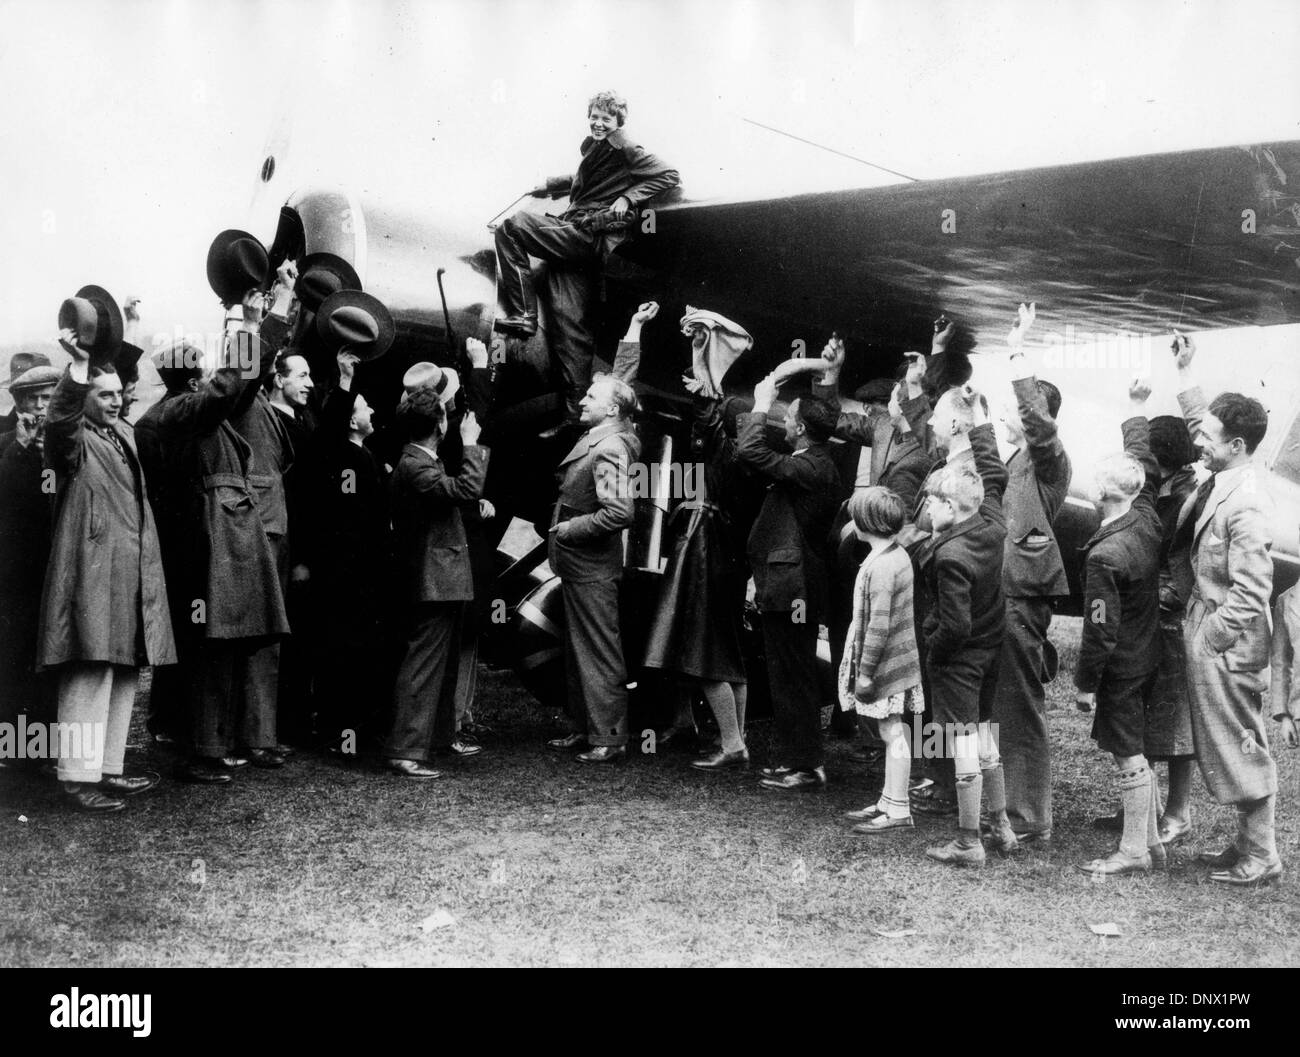 Mayo 21, 1932 - Londonderry, Irlanda - El aviador femenino Amelia Earhart, la primera mujer en volar sola cruzando el Atlántico recibe aplausos de la multitud después de tocar en Irlanda del Norte. (Crédito de la Imagen: © KEYSTONE USA/ZUMAPRESS.com) imágenes Foto de stock